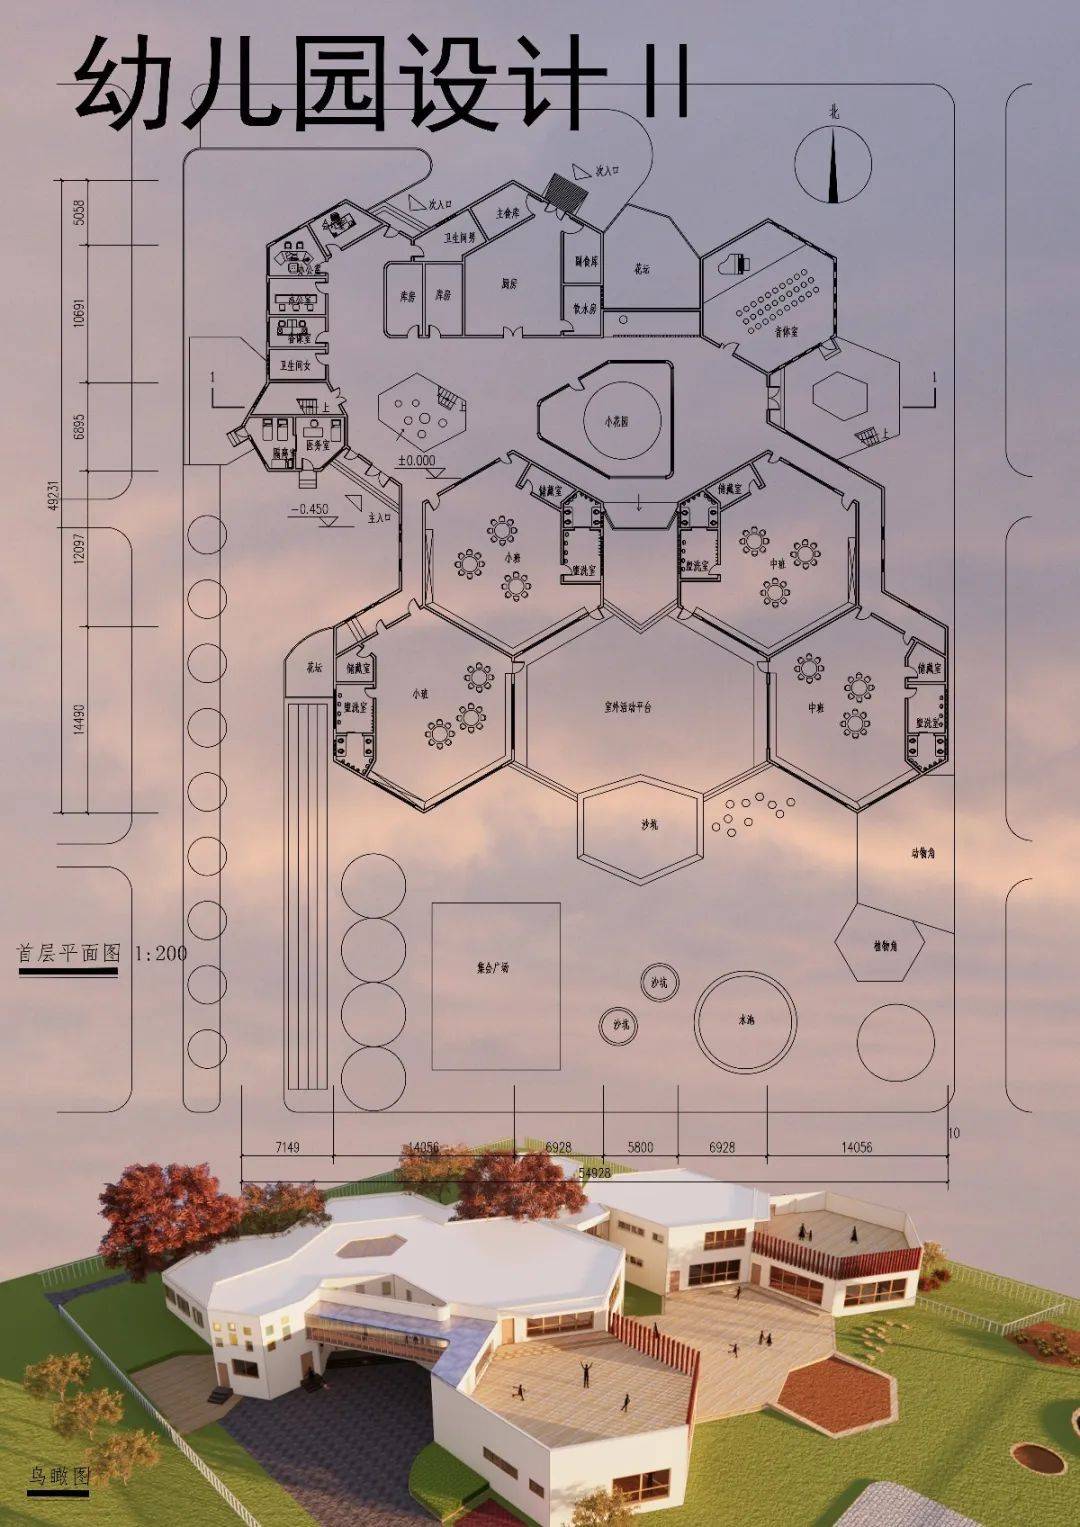 河北大学建筑学2019级春学期课程展:幼儿园方案设计